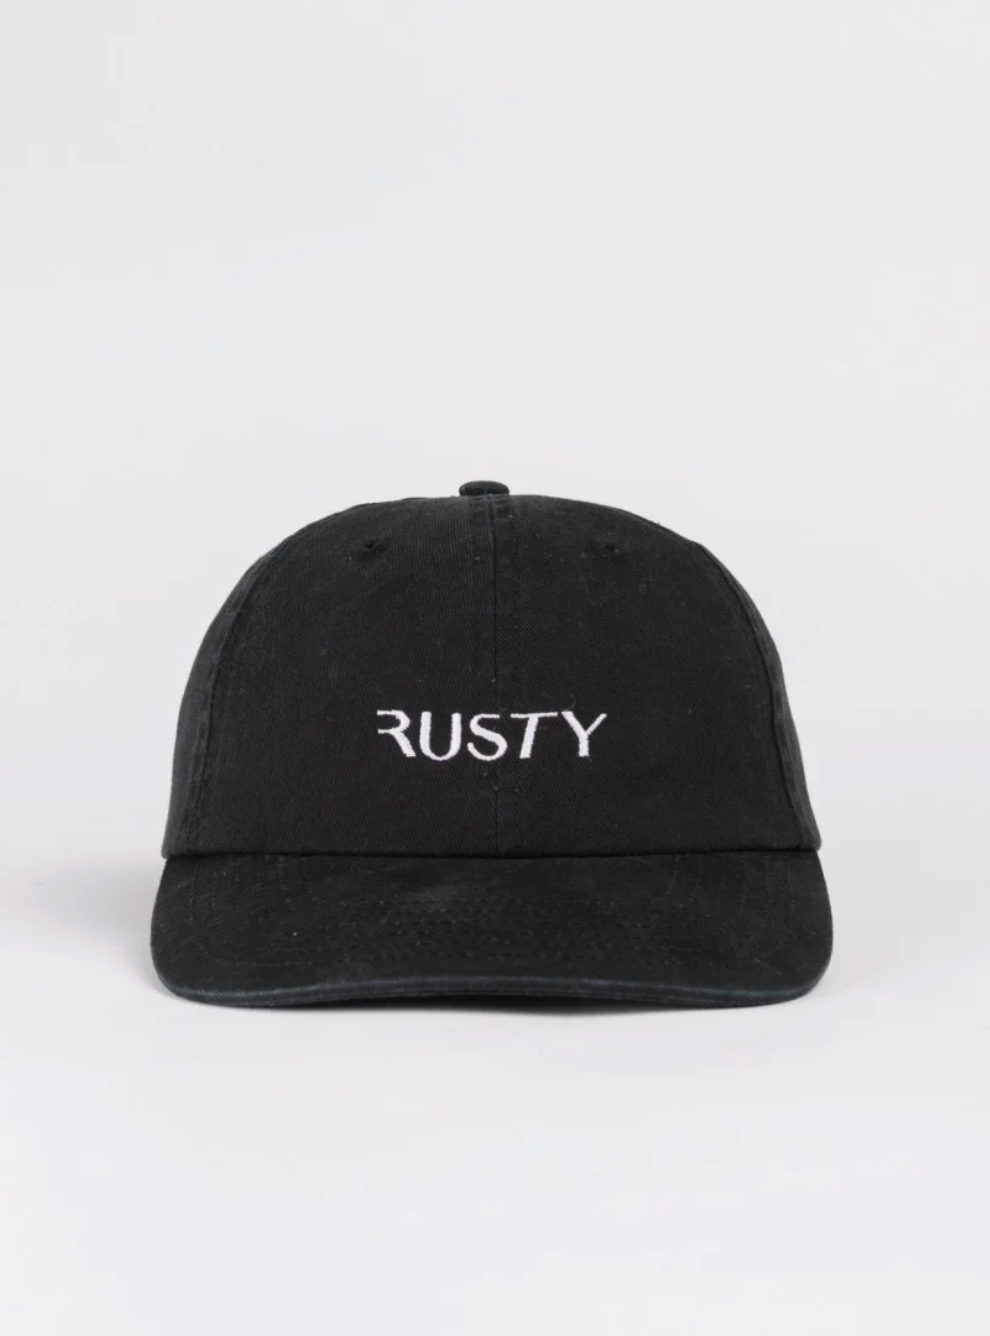 RUSTY ADJUSTABLE CAP